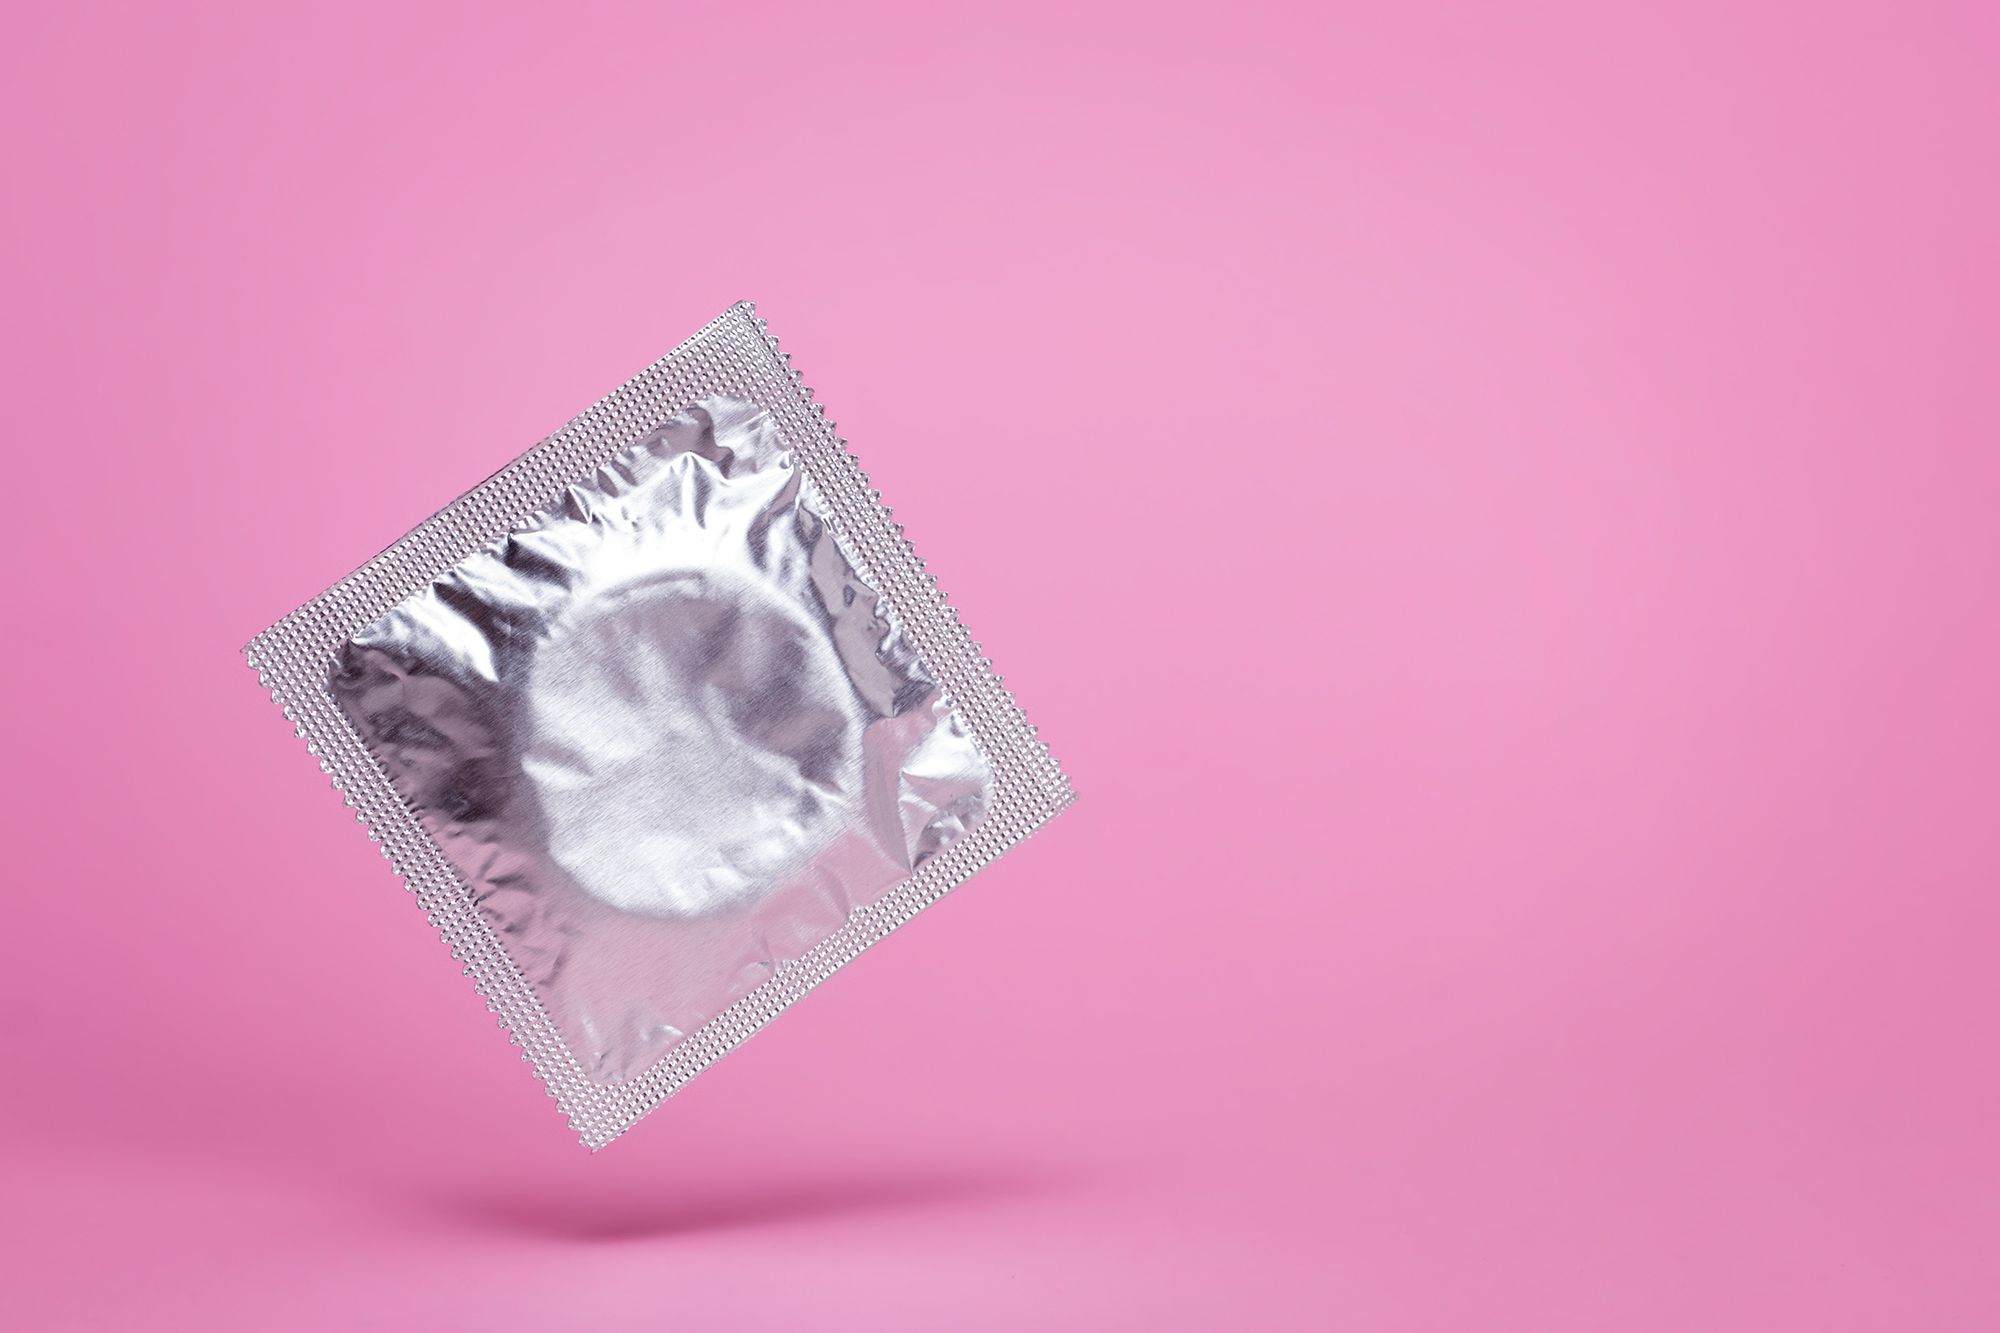 Silberne Kondomverpackung auf pinkem Hintergrund